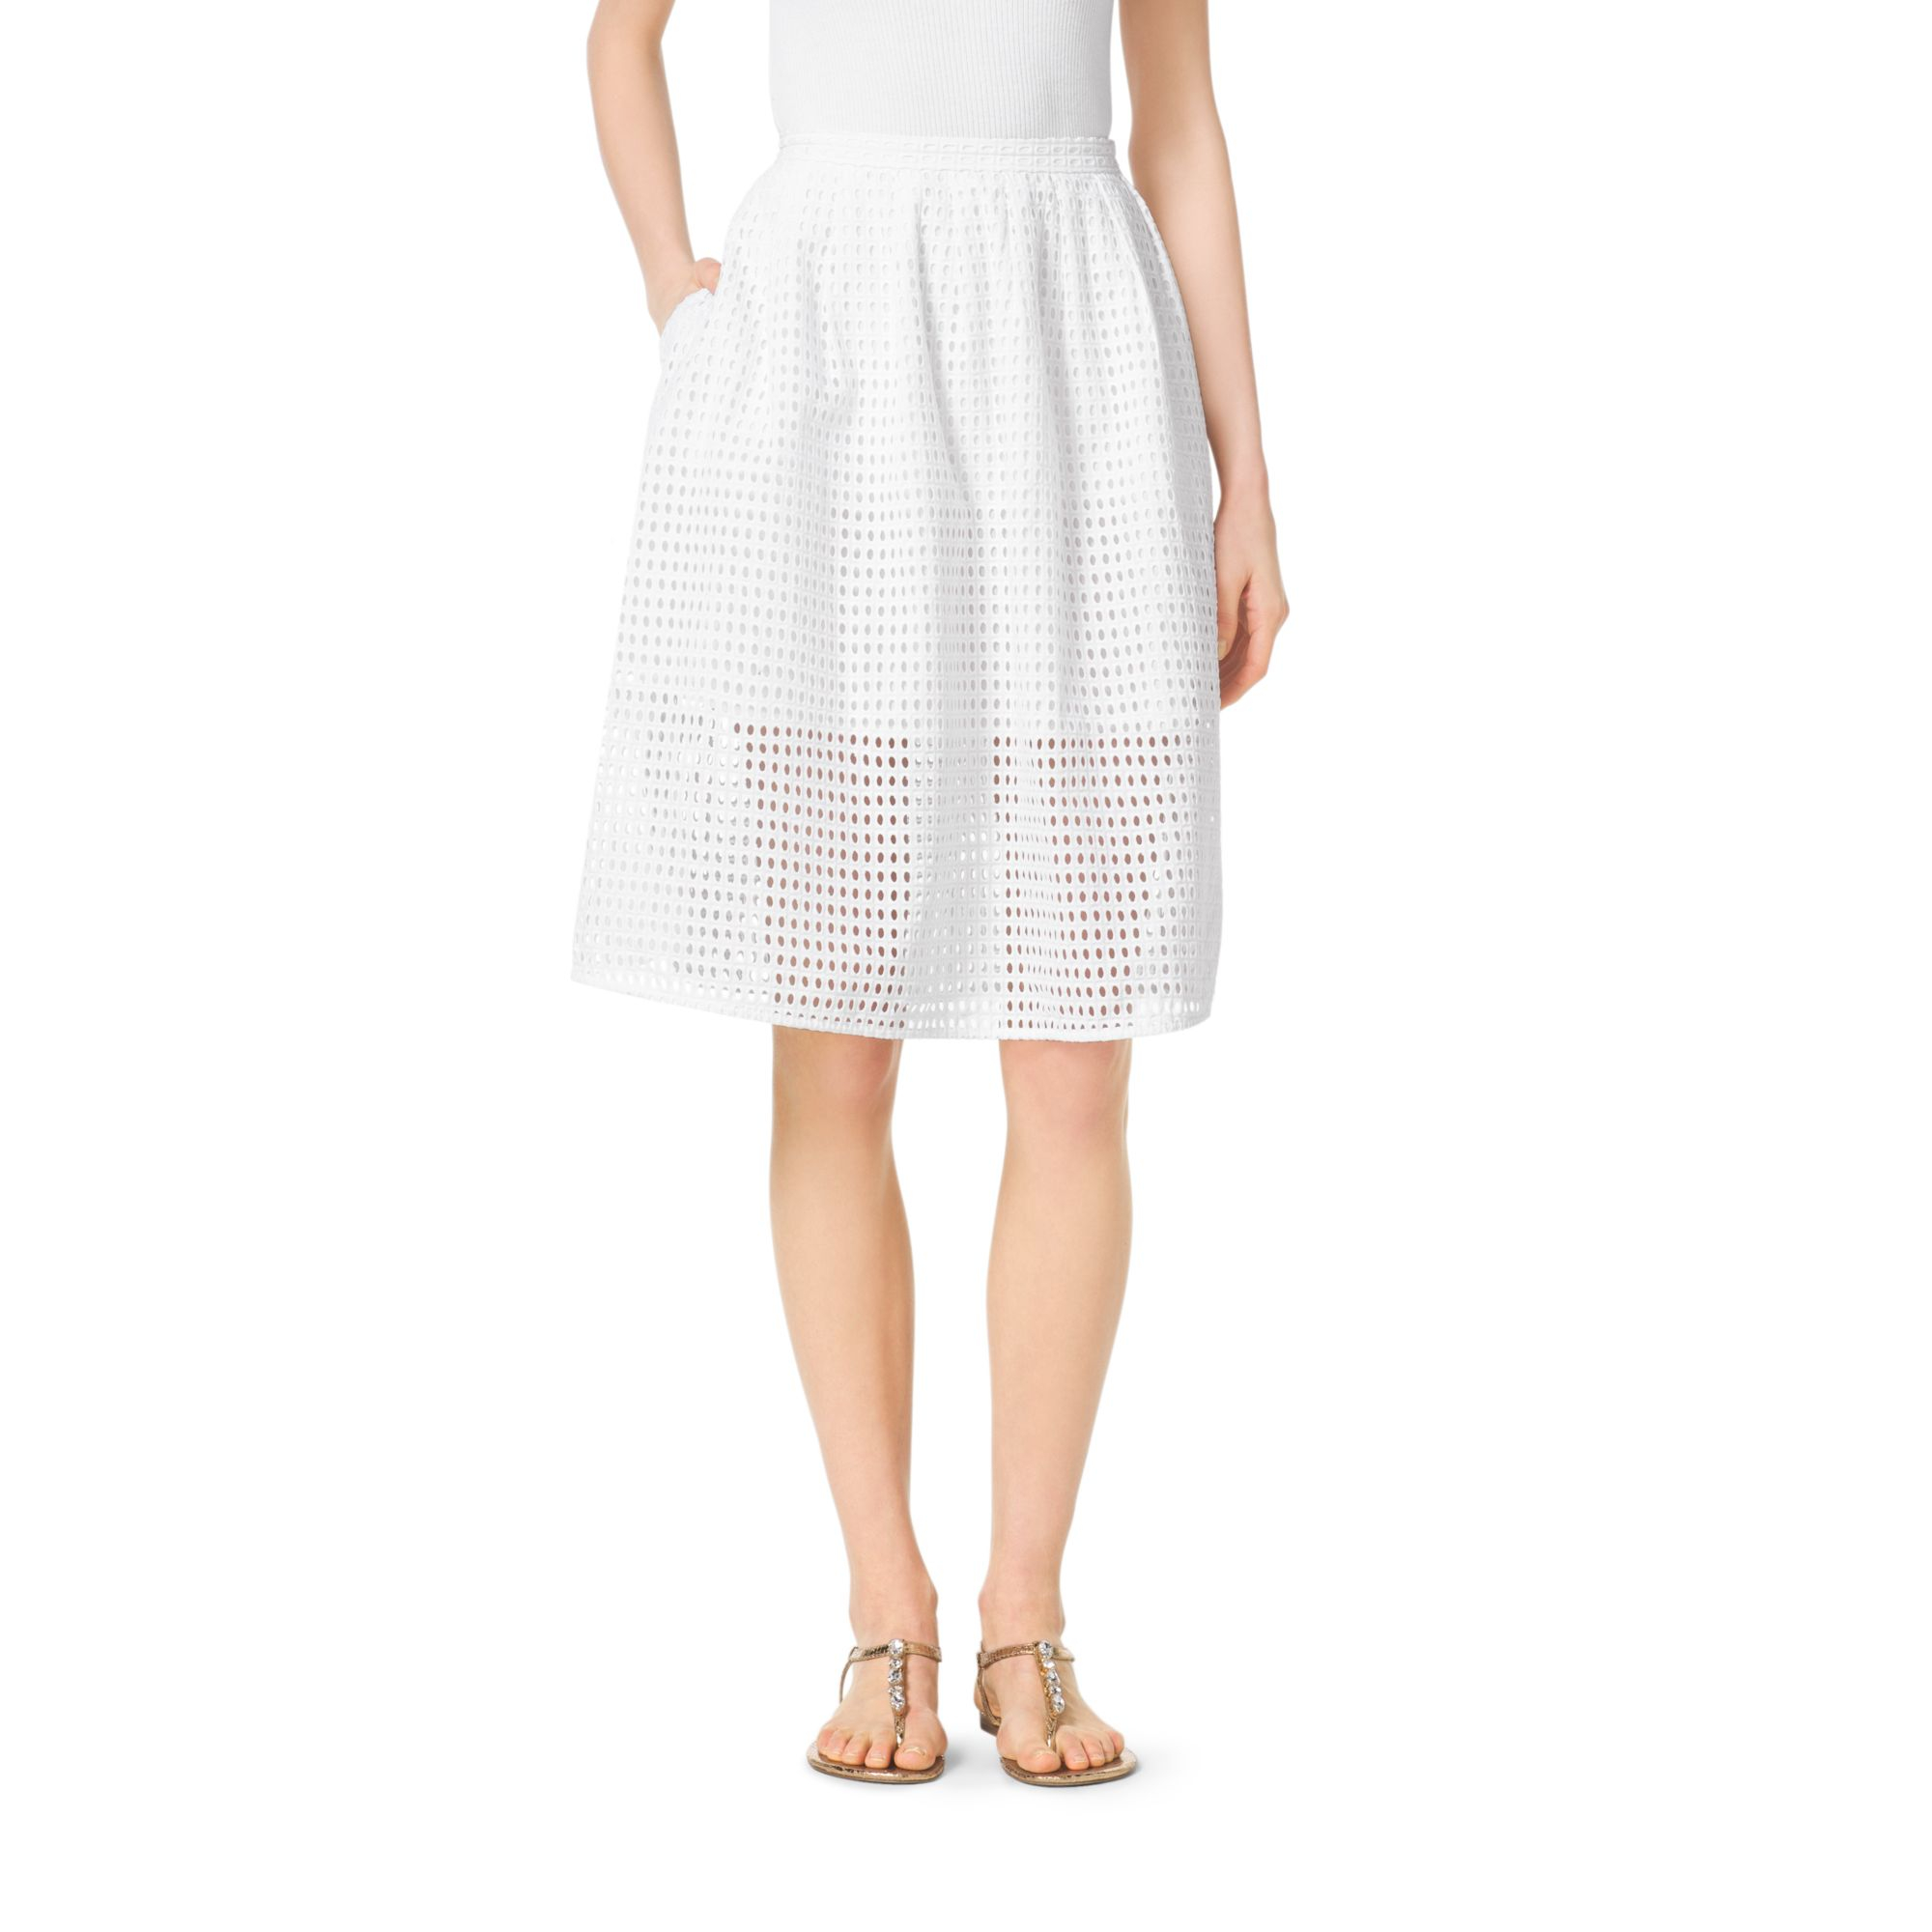 Michael Kors Eyelet Skirt in White - Lyst